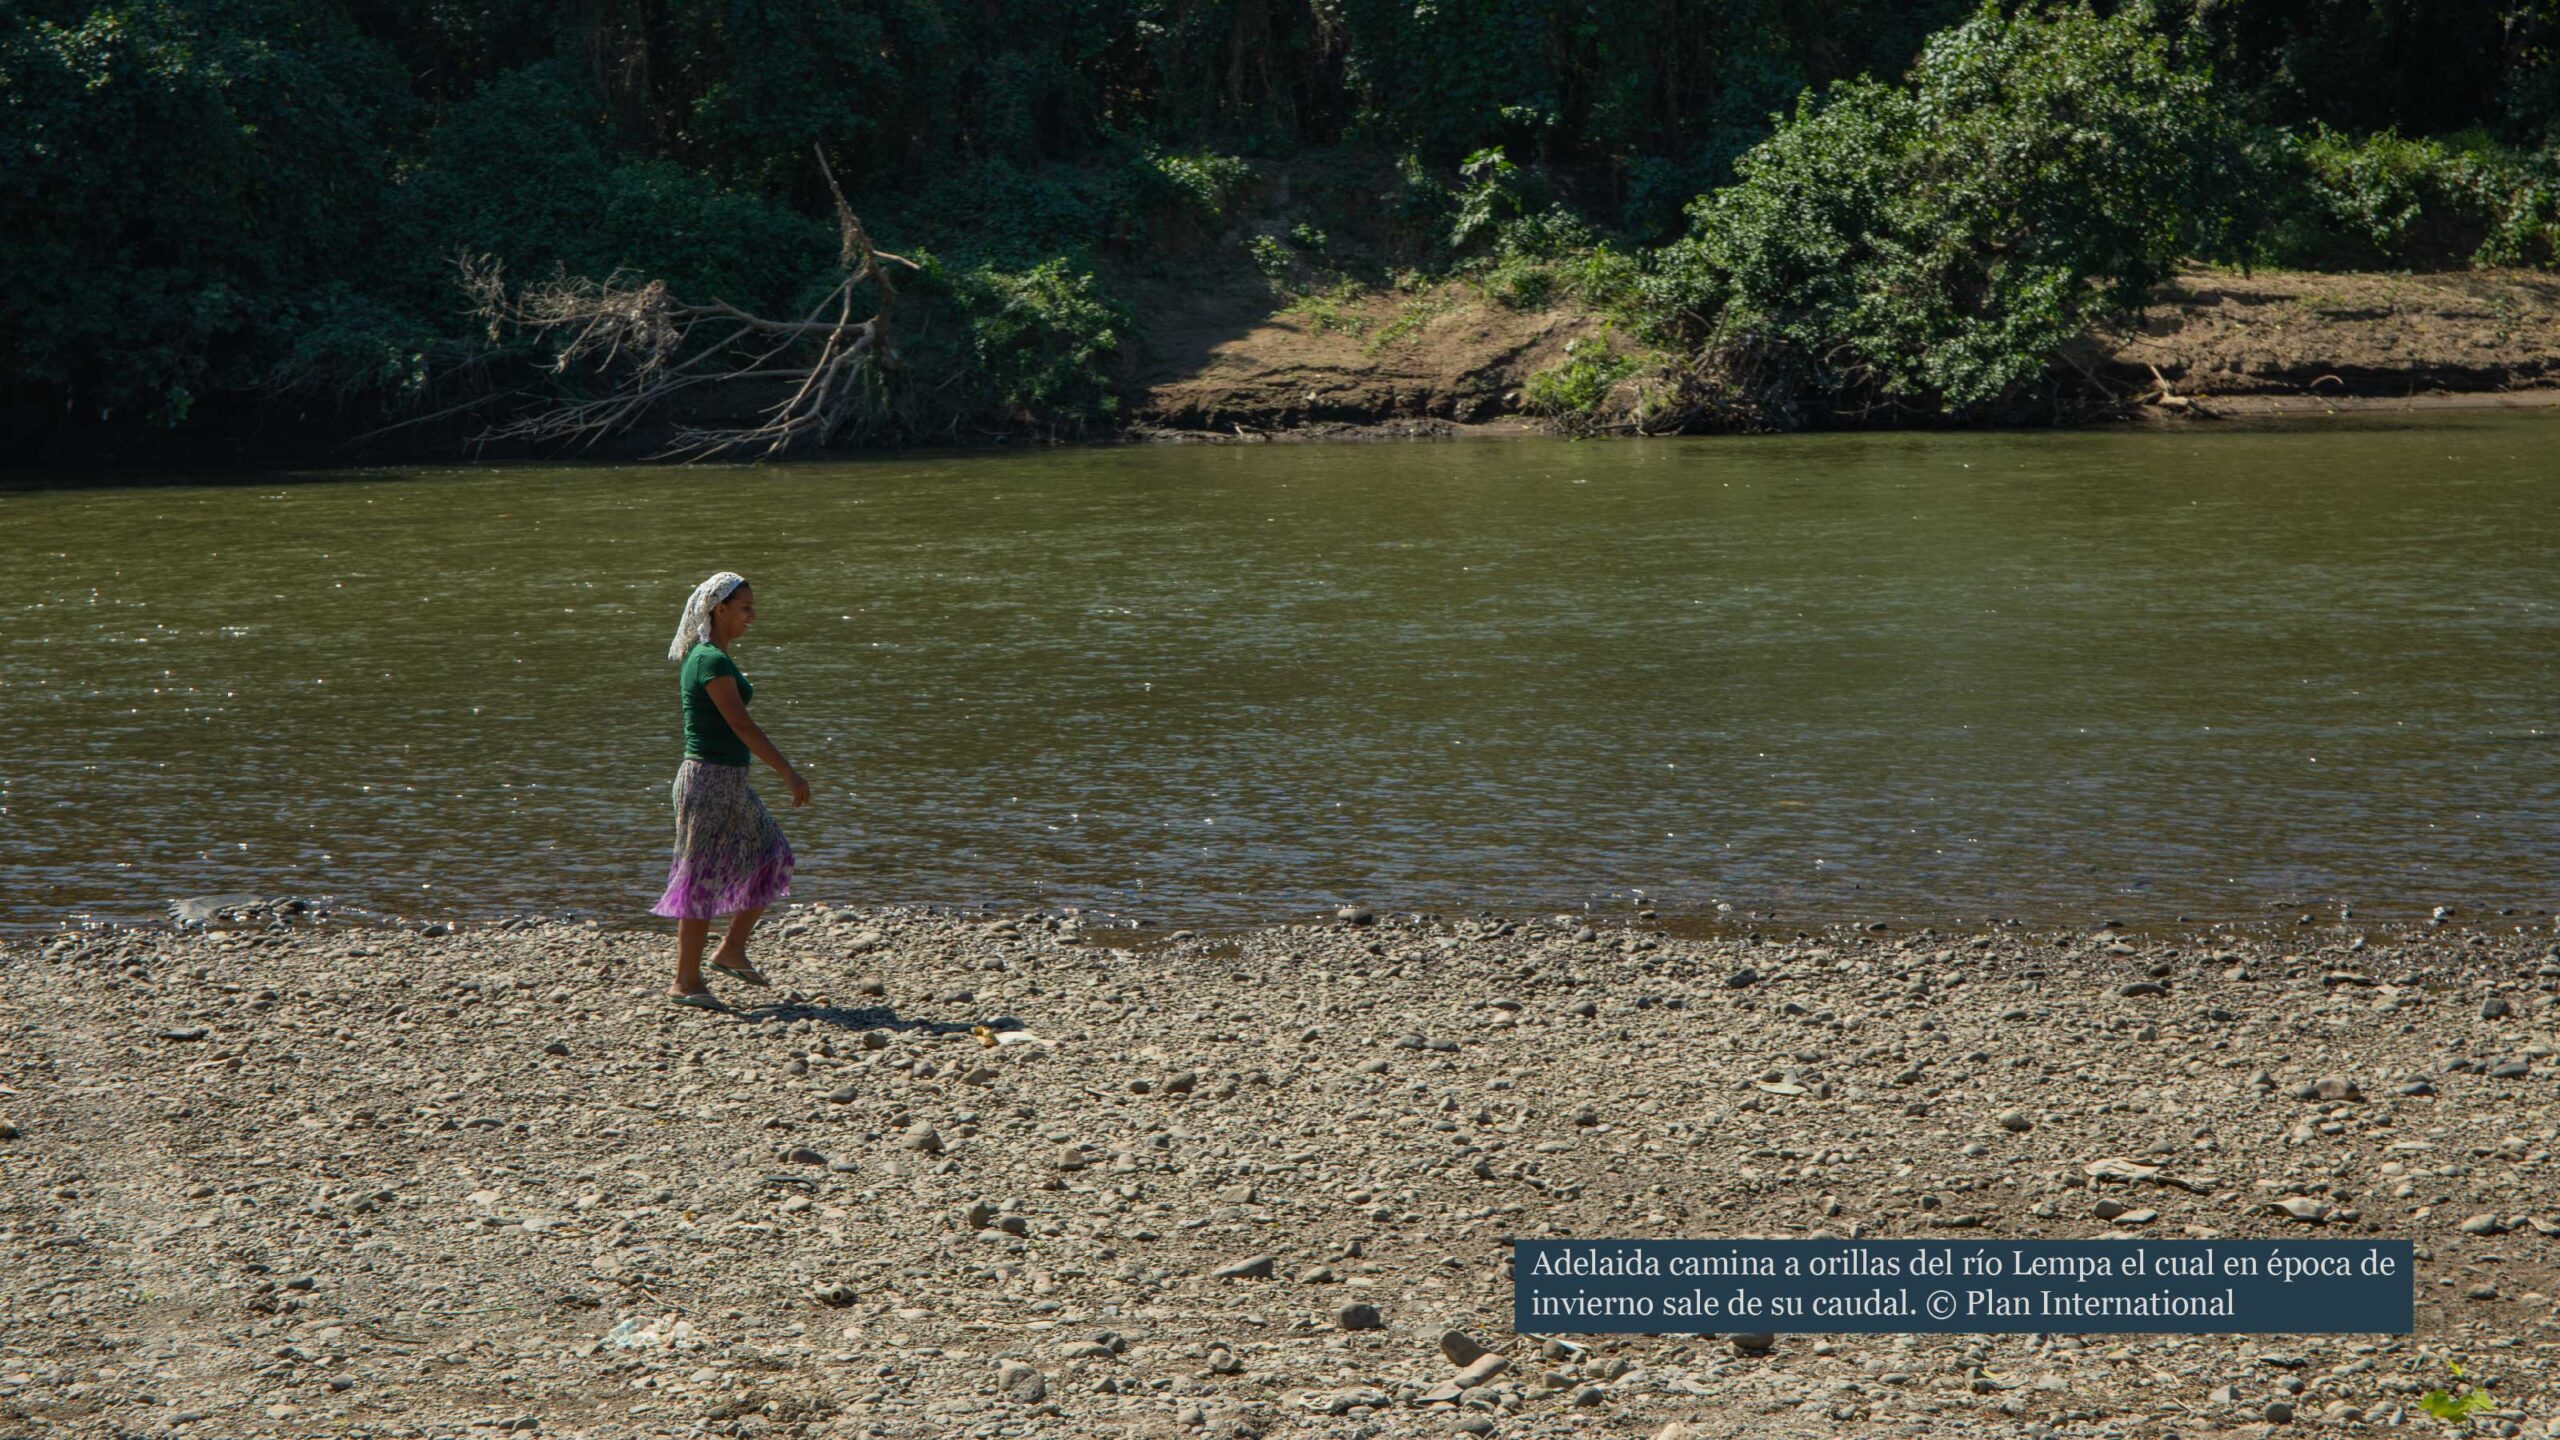 Adelaida caminando a las orillas del río Lempa en Chalatenango